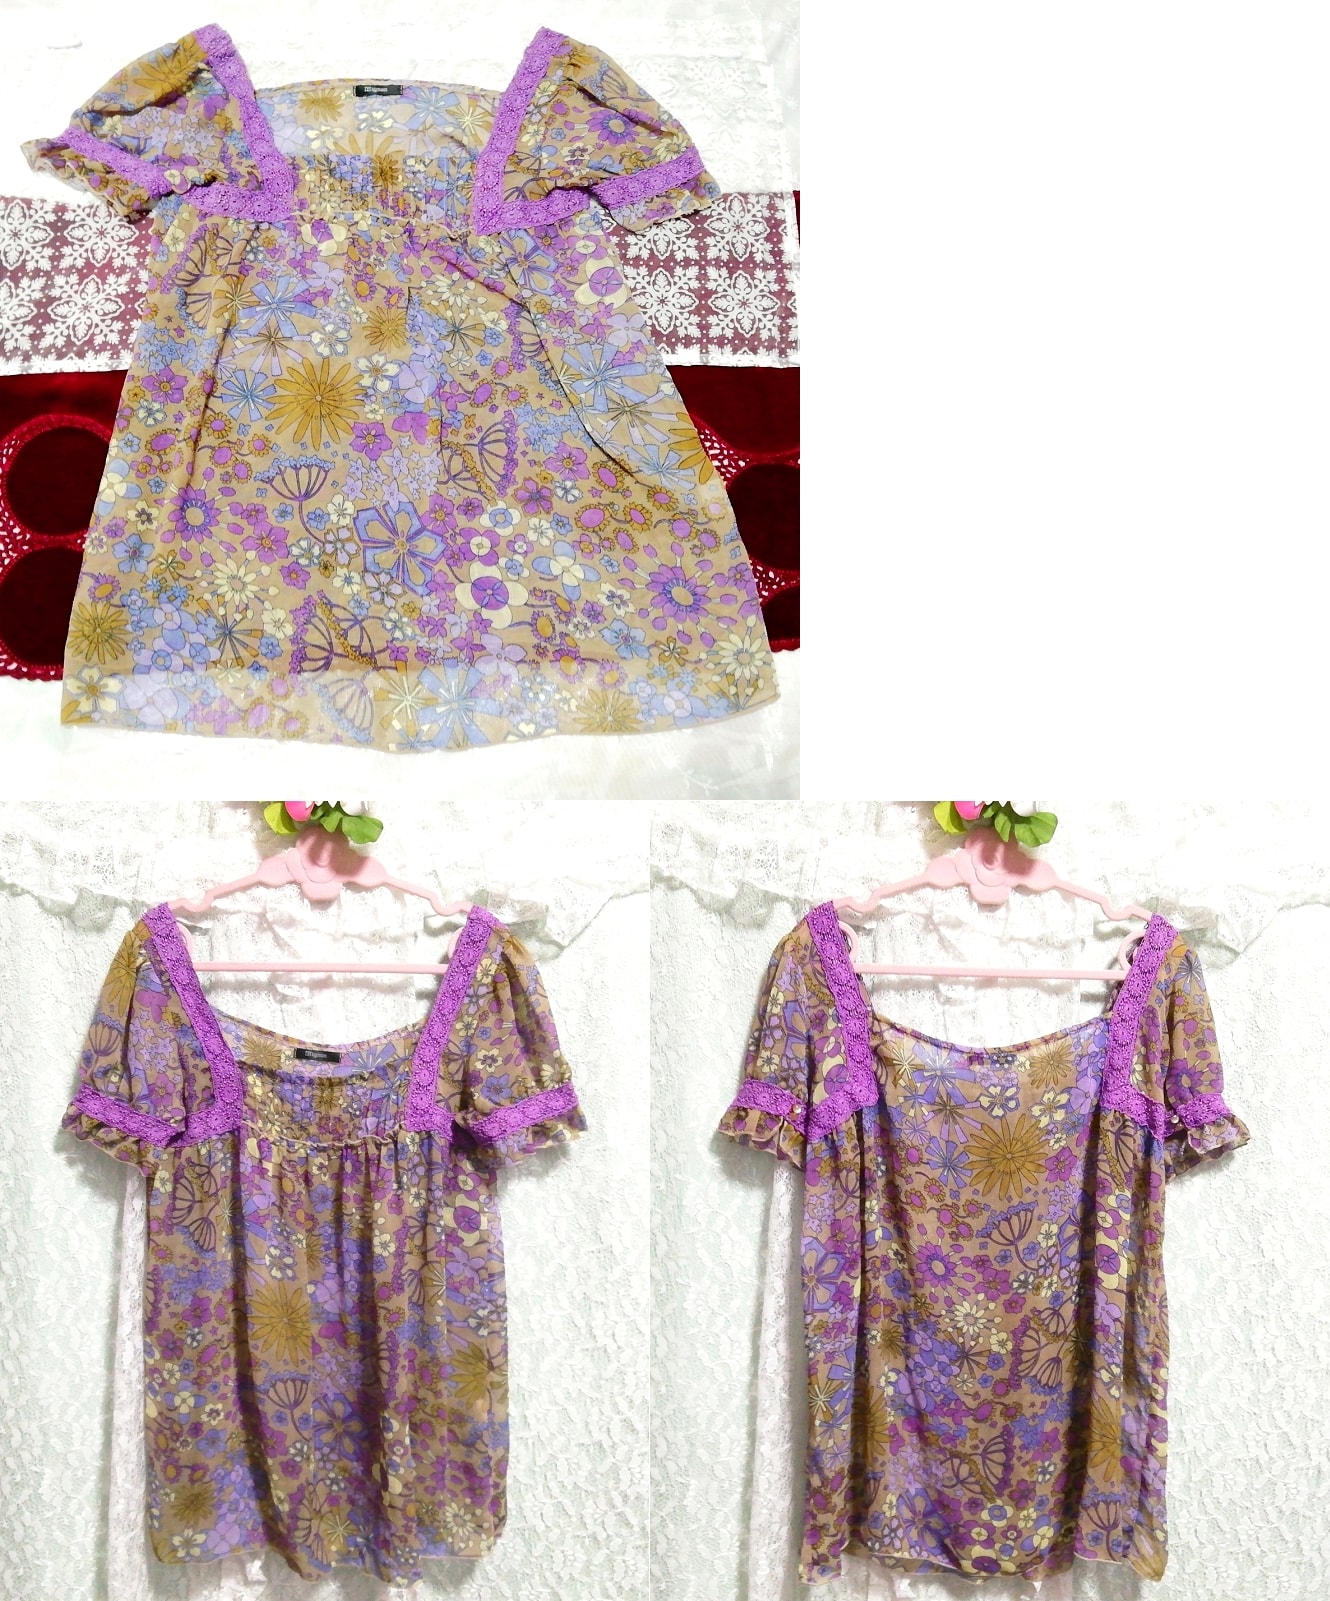 Camisón negligee tipo túnica de gasa con estampado étnico floral de encaje morado, sayo, manga corta, talla m